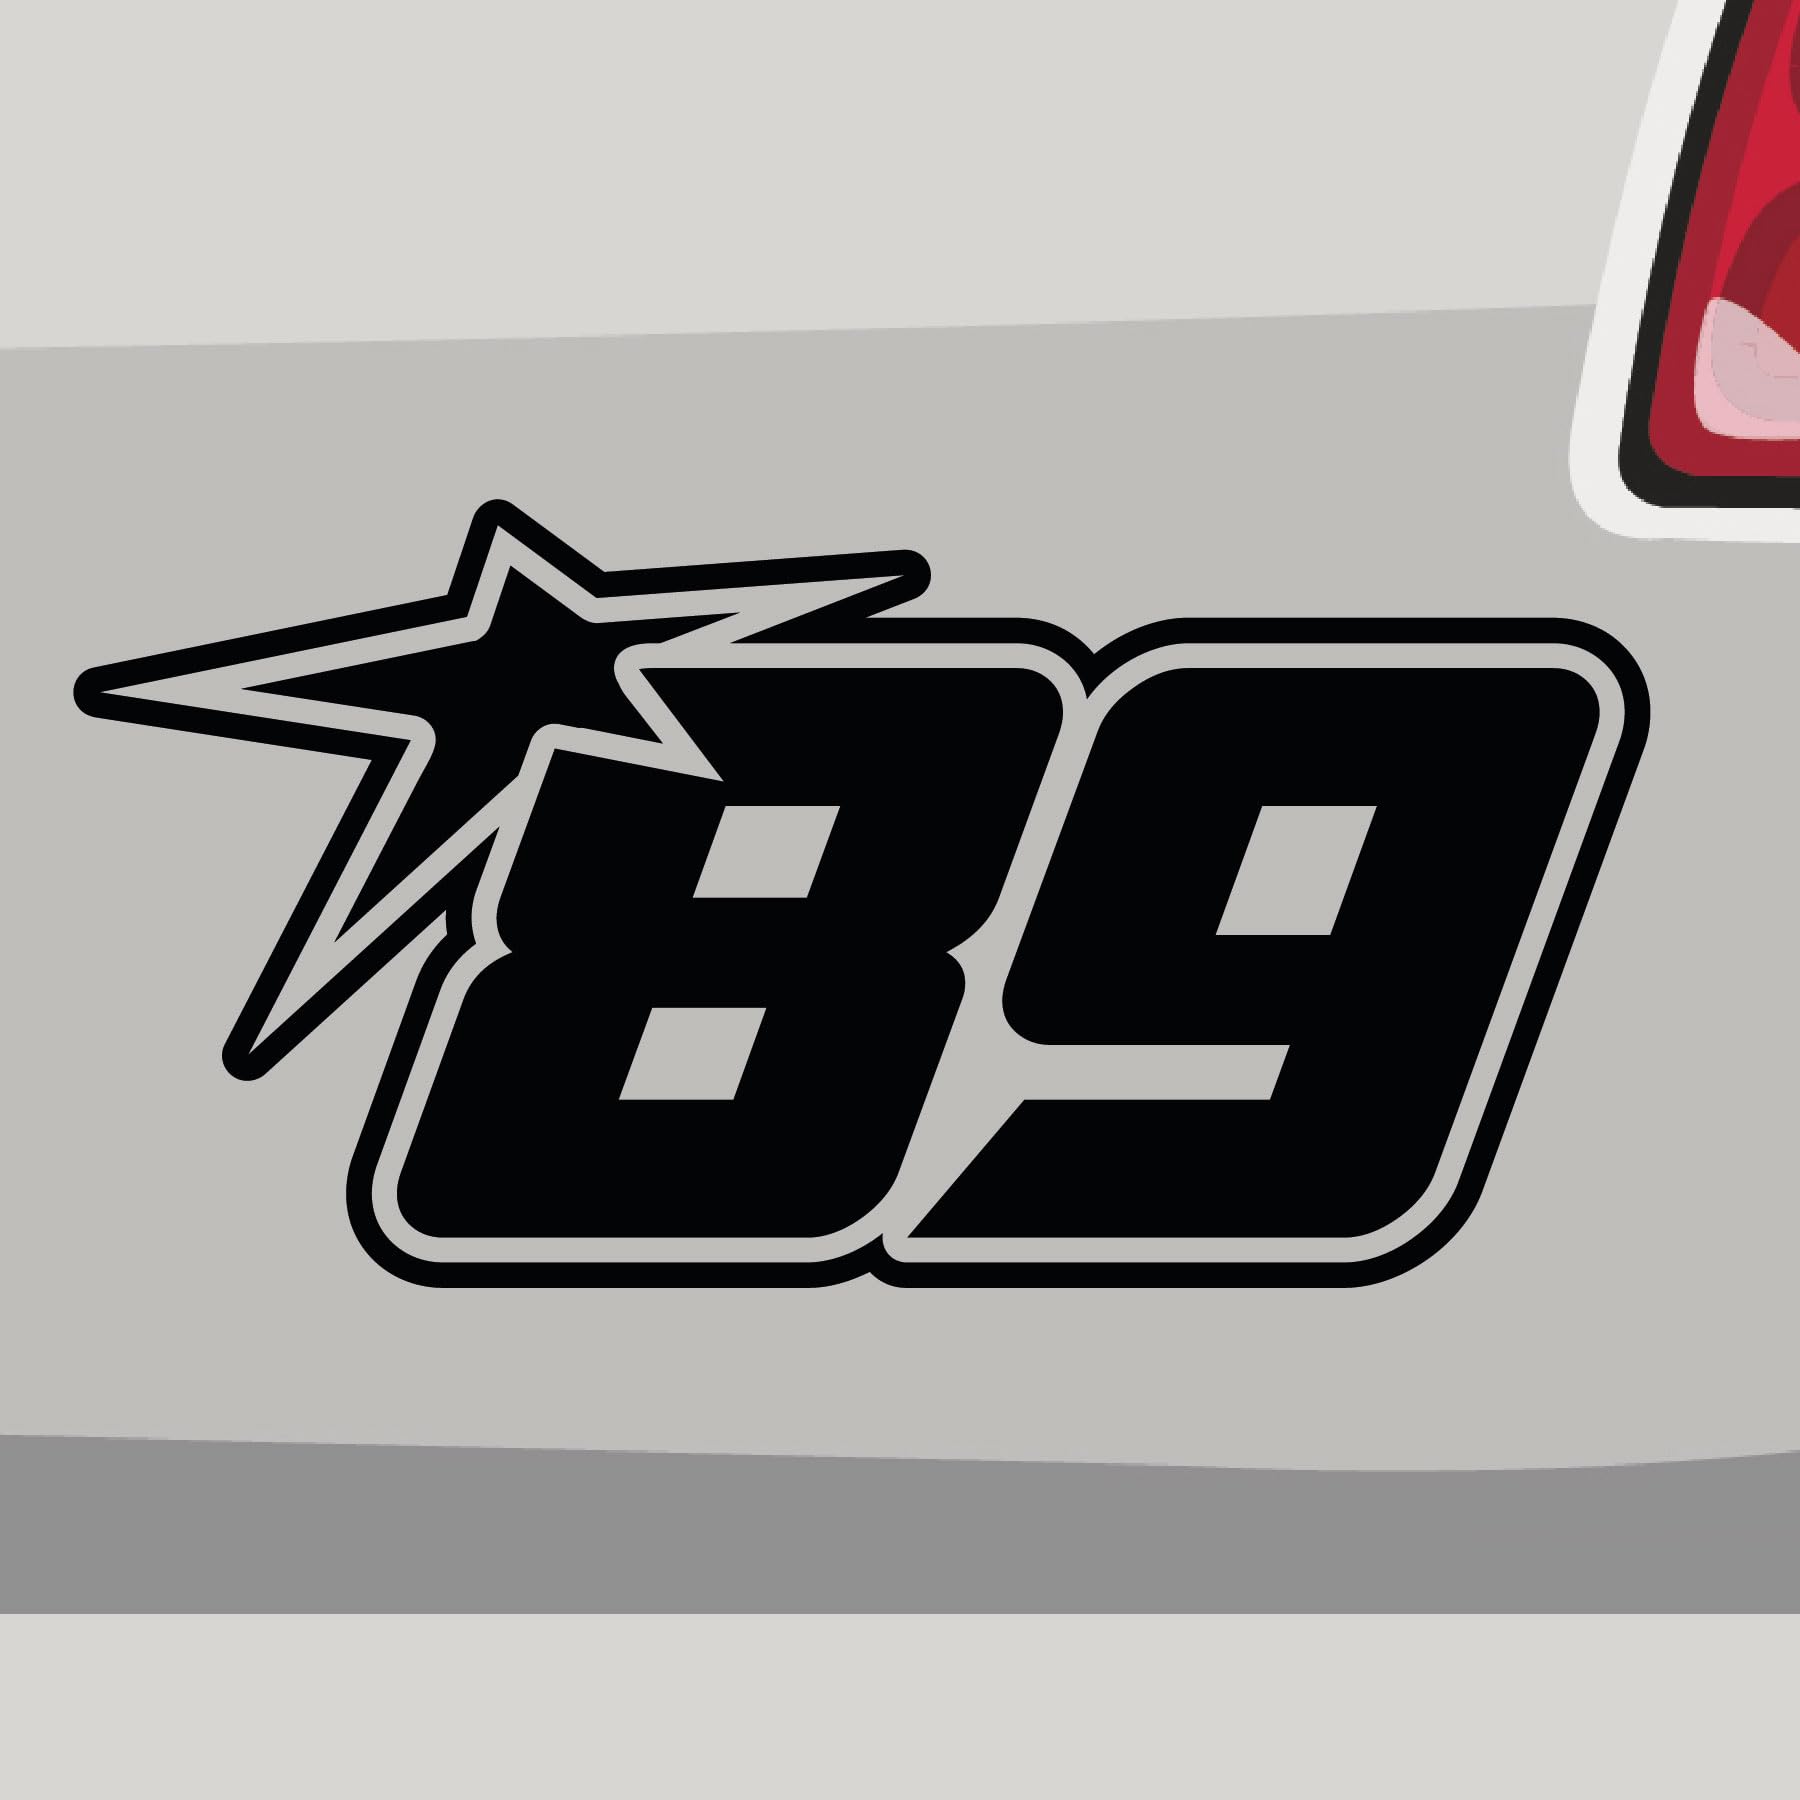 Stickerfreaks Startnummer 89 Aufkleber Number Sticker Track Race Star Auto Bike Vinyl Aufkleber Größe: 14x7cm (M) | Farbe: 41-pink | Number Sticker Kleber Deko Tuning Startnummer von Stickerfreaks